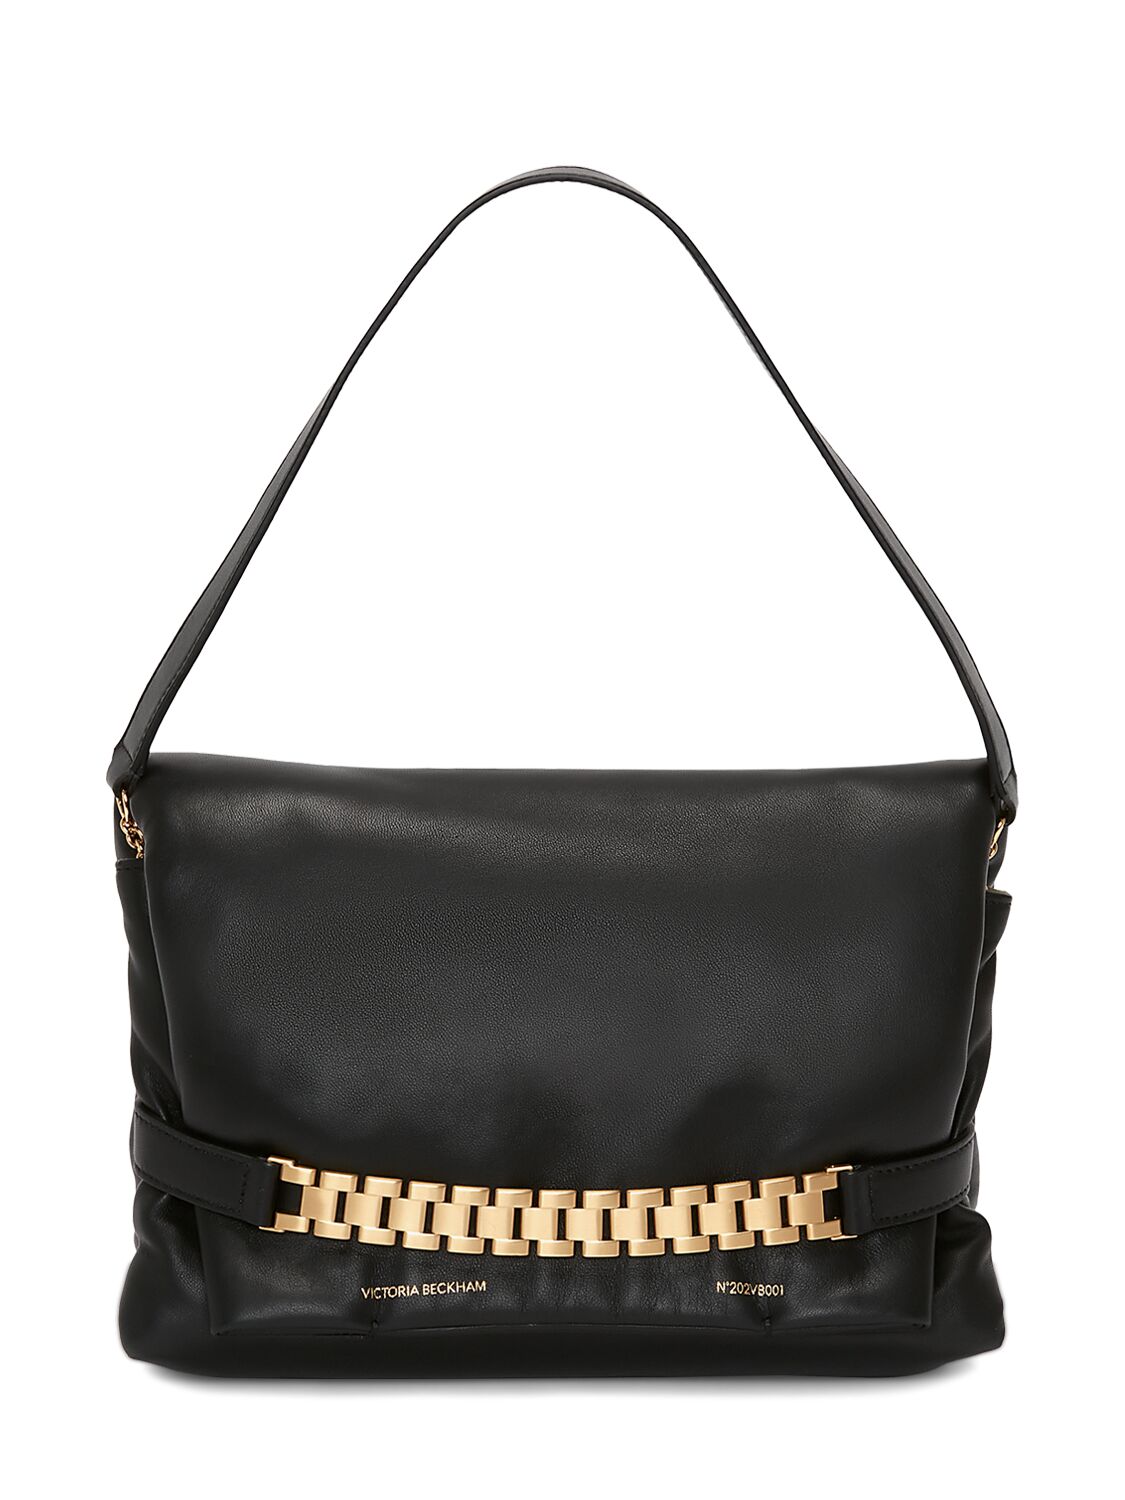 Victoria Beckham Chain Pouch Bag In Black